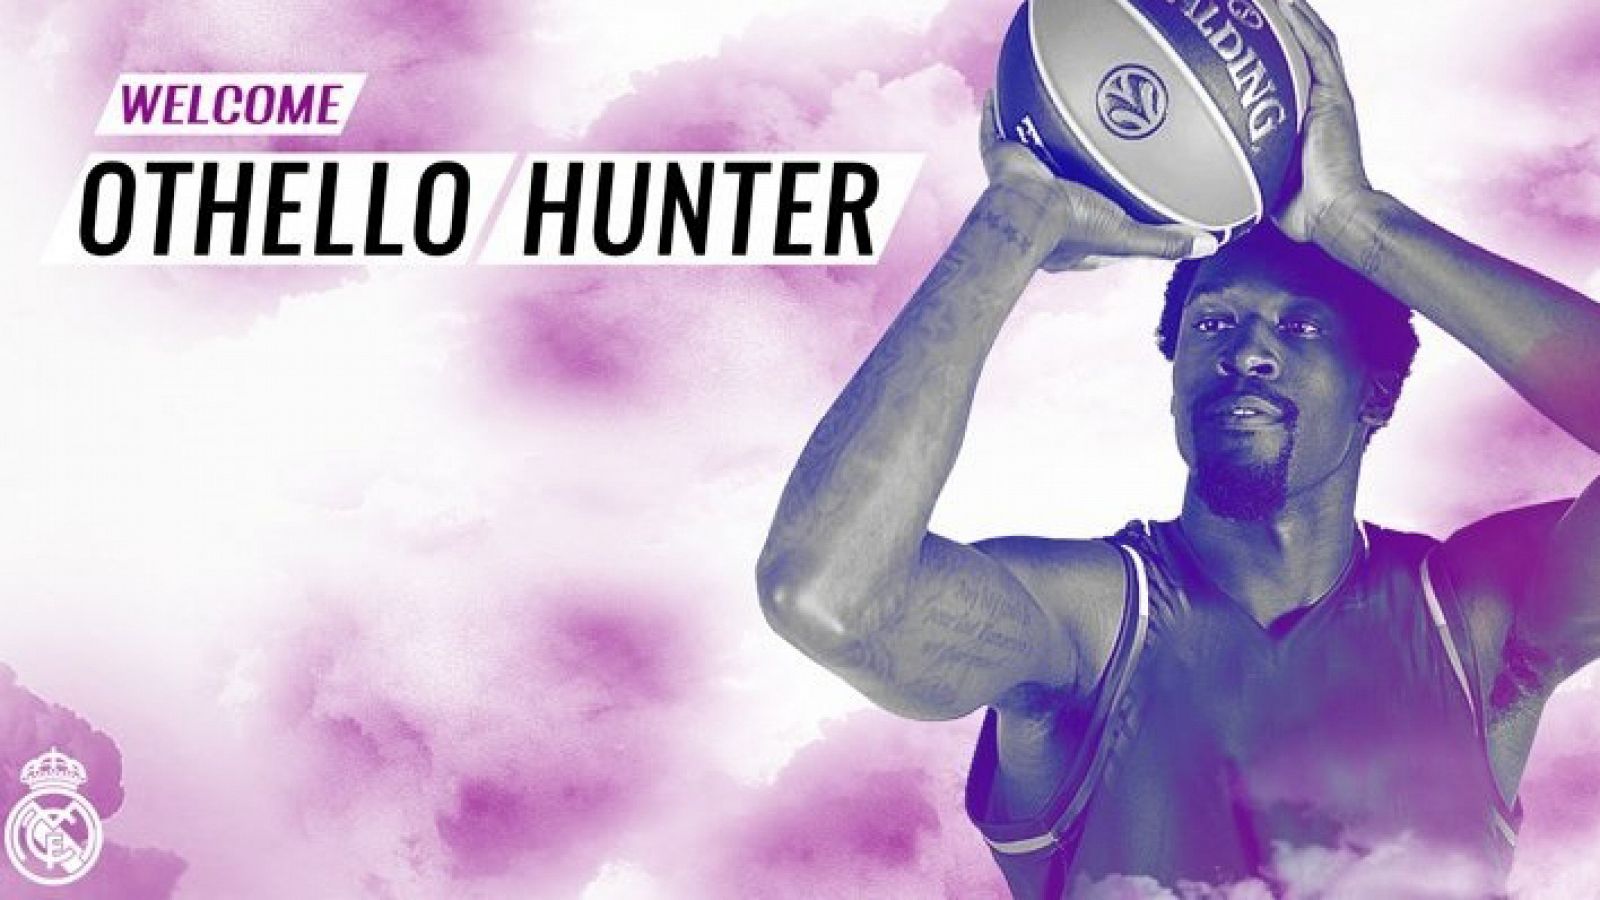 El Real Madrid de baloncesto ha anunciado el fichaje de Othello Hunter. El pívot estadounidense con pasaporte liberiano llega procedente del Olympiacos.